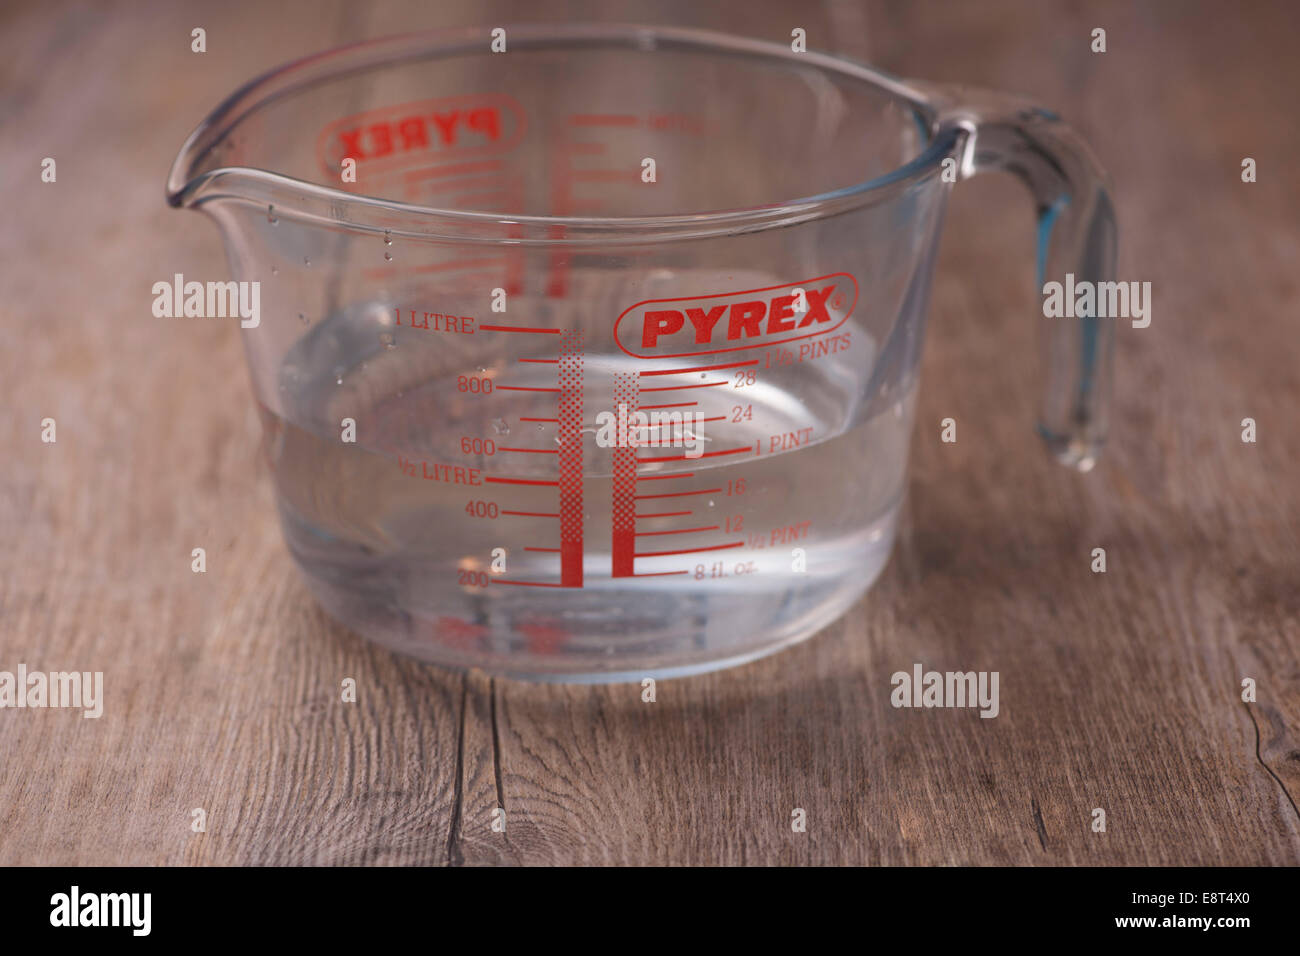 https://c8.alamy.com/comp/E8T4X0/pyrex-glass-one-litre-measuring-jug-E8T4X0.jpg